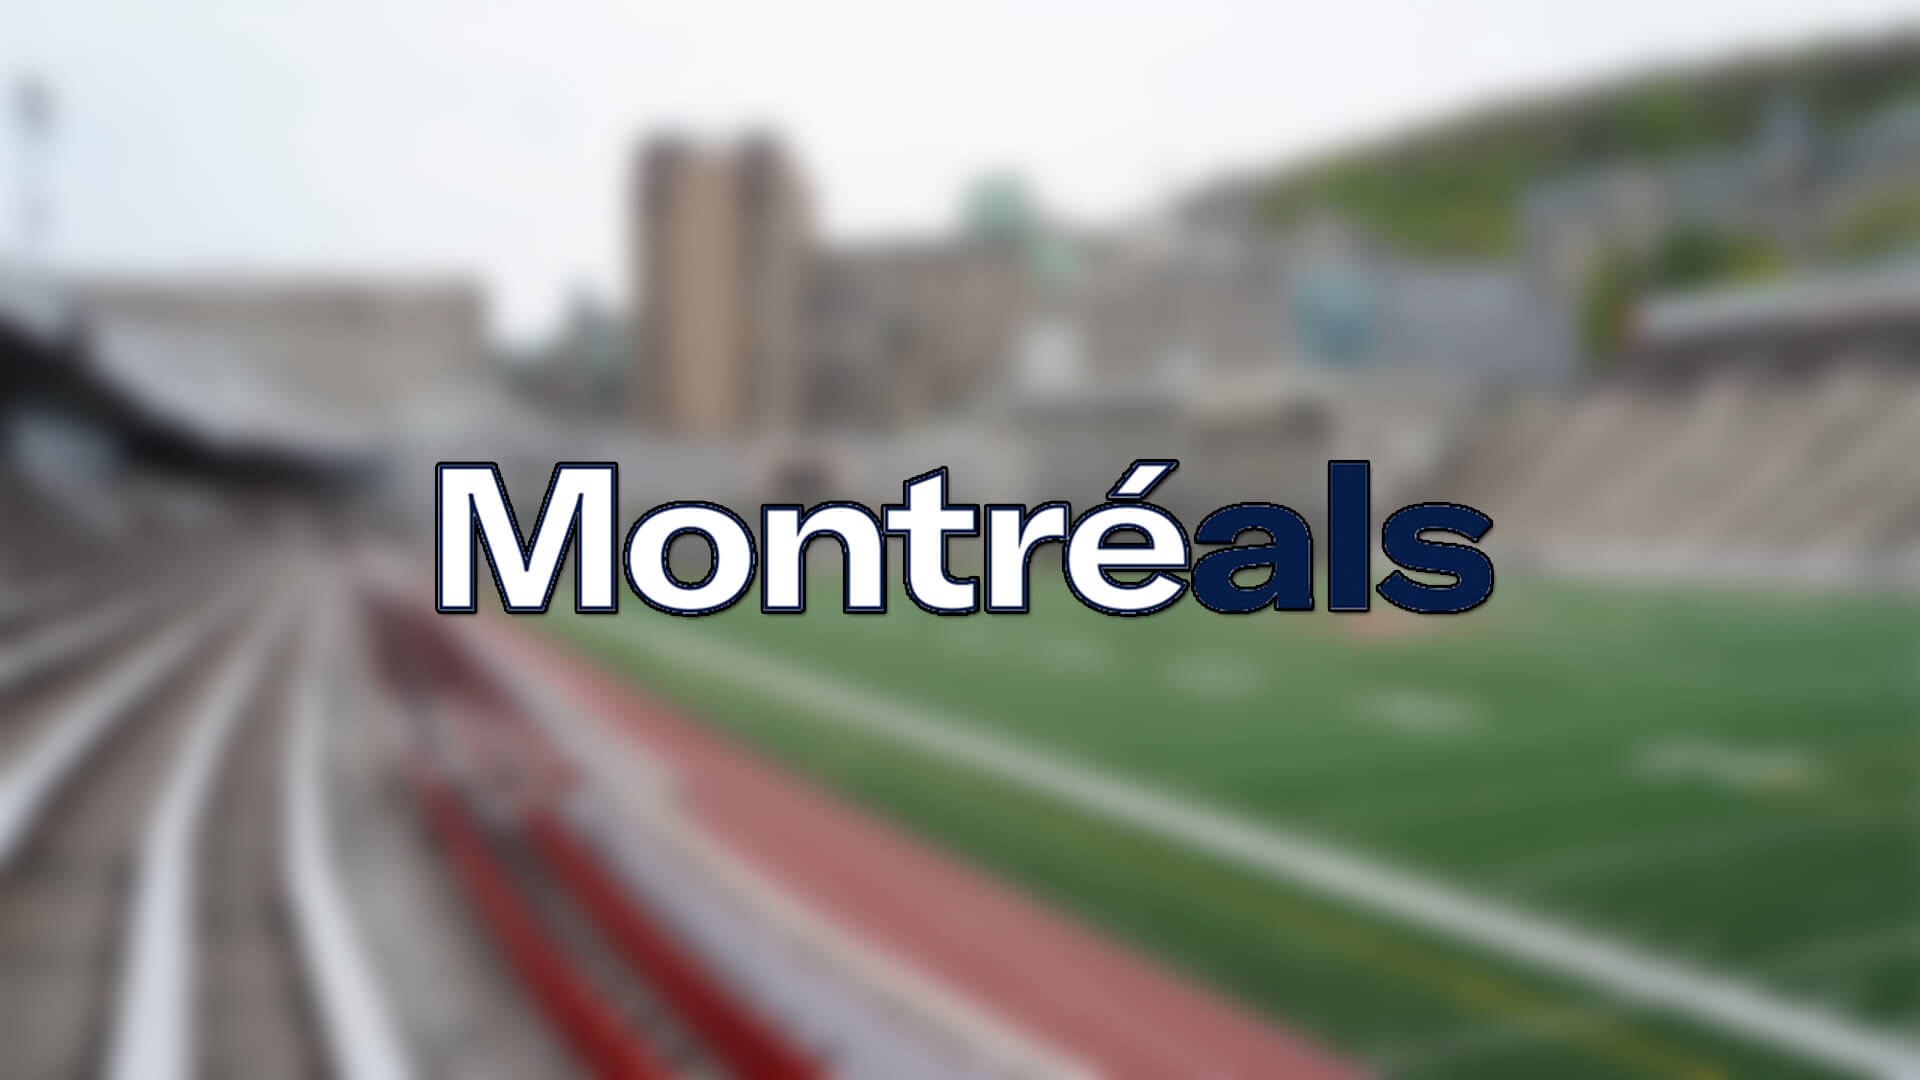 Montreal Alouettes, Eugene Lewis ile Kontratı Uzattı | Korumalı Futbol Türkiye